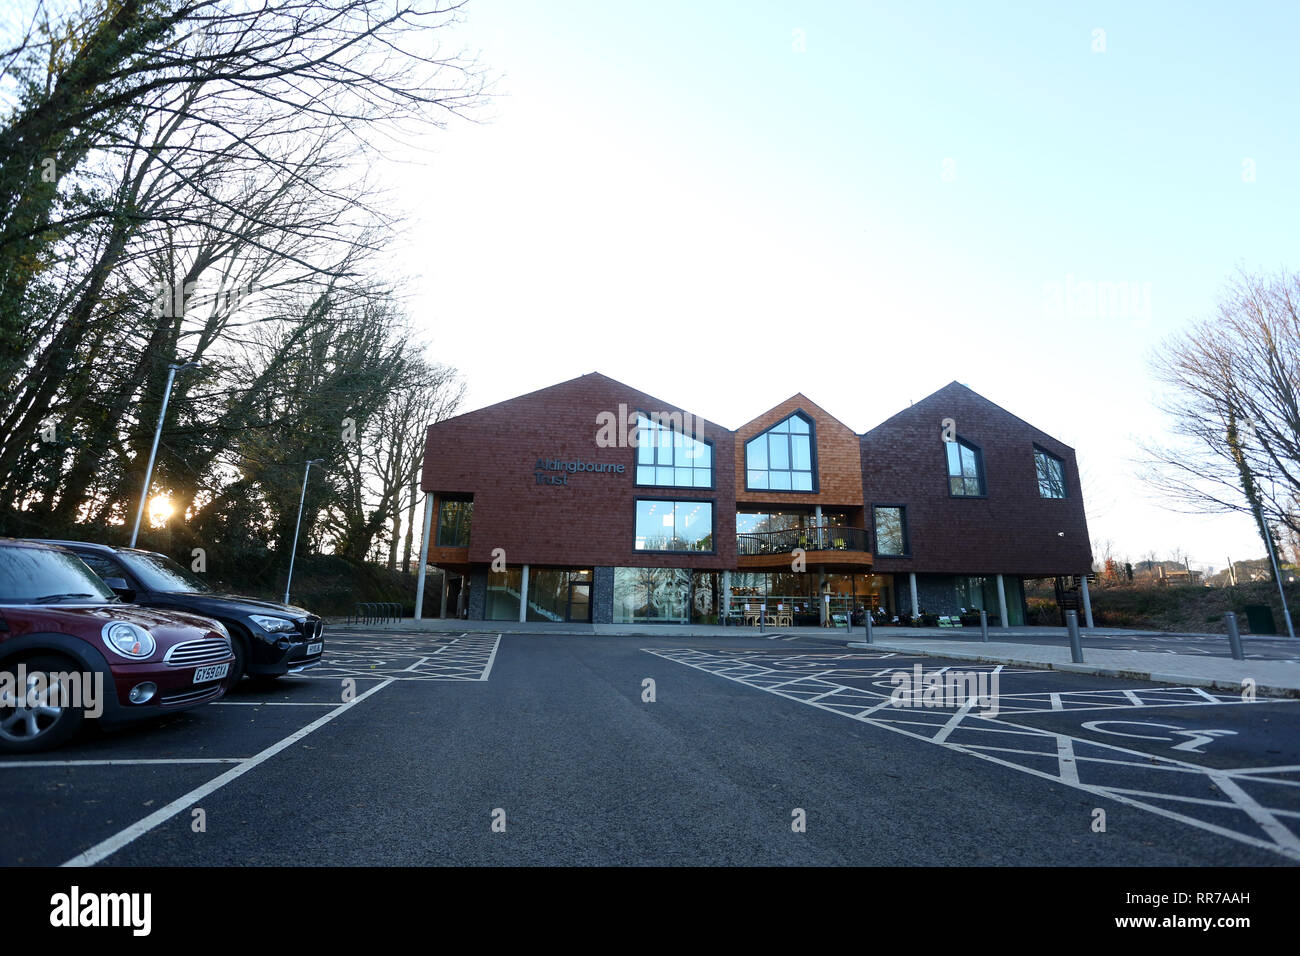 Allgemeine Ansichten des neuen Aldingbourne Trust HQ in West Sussex, UK. Stockfoto